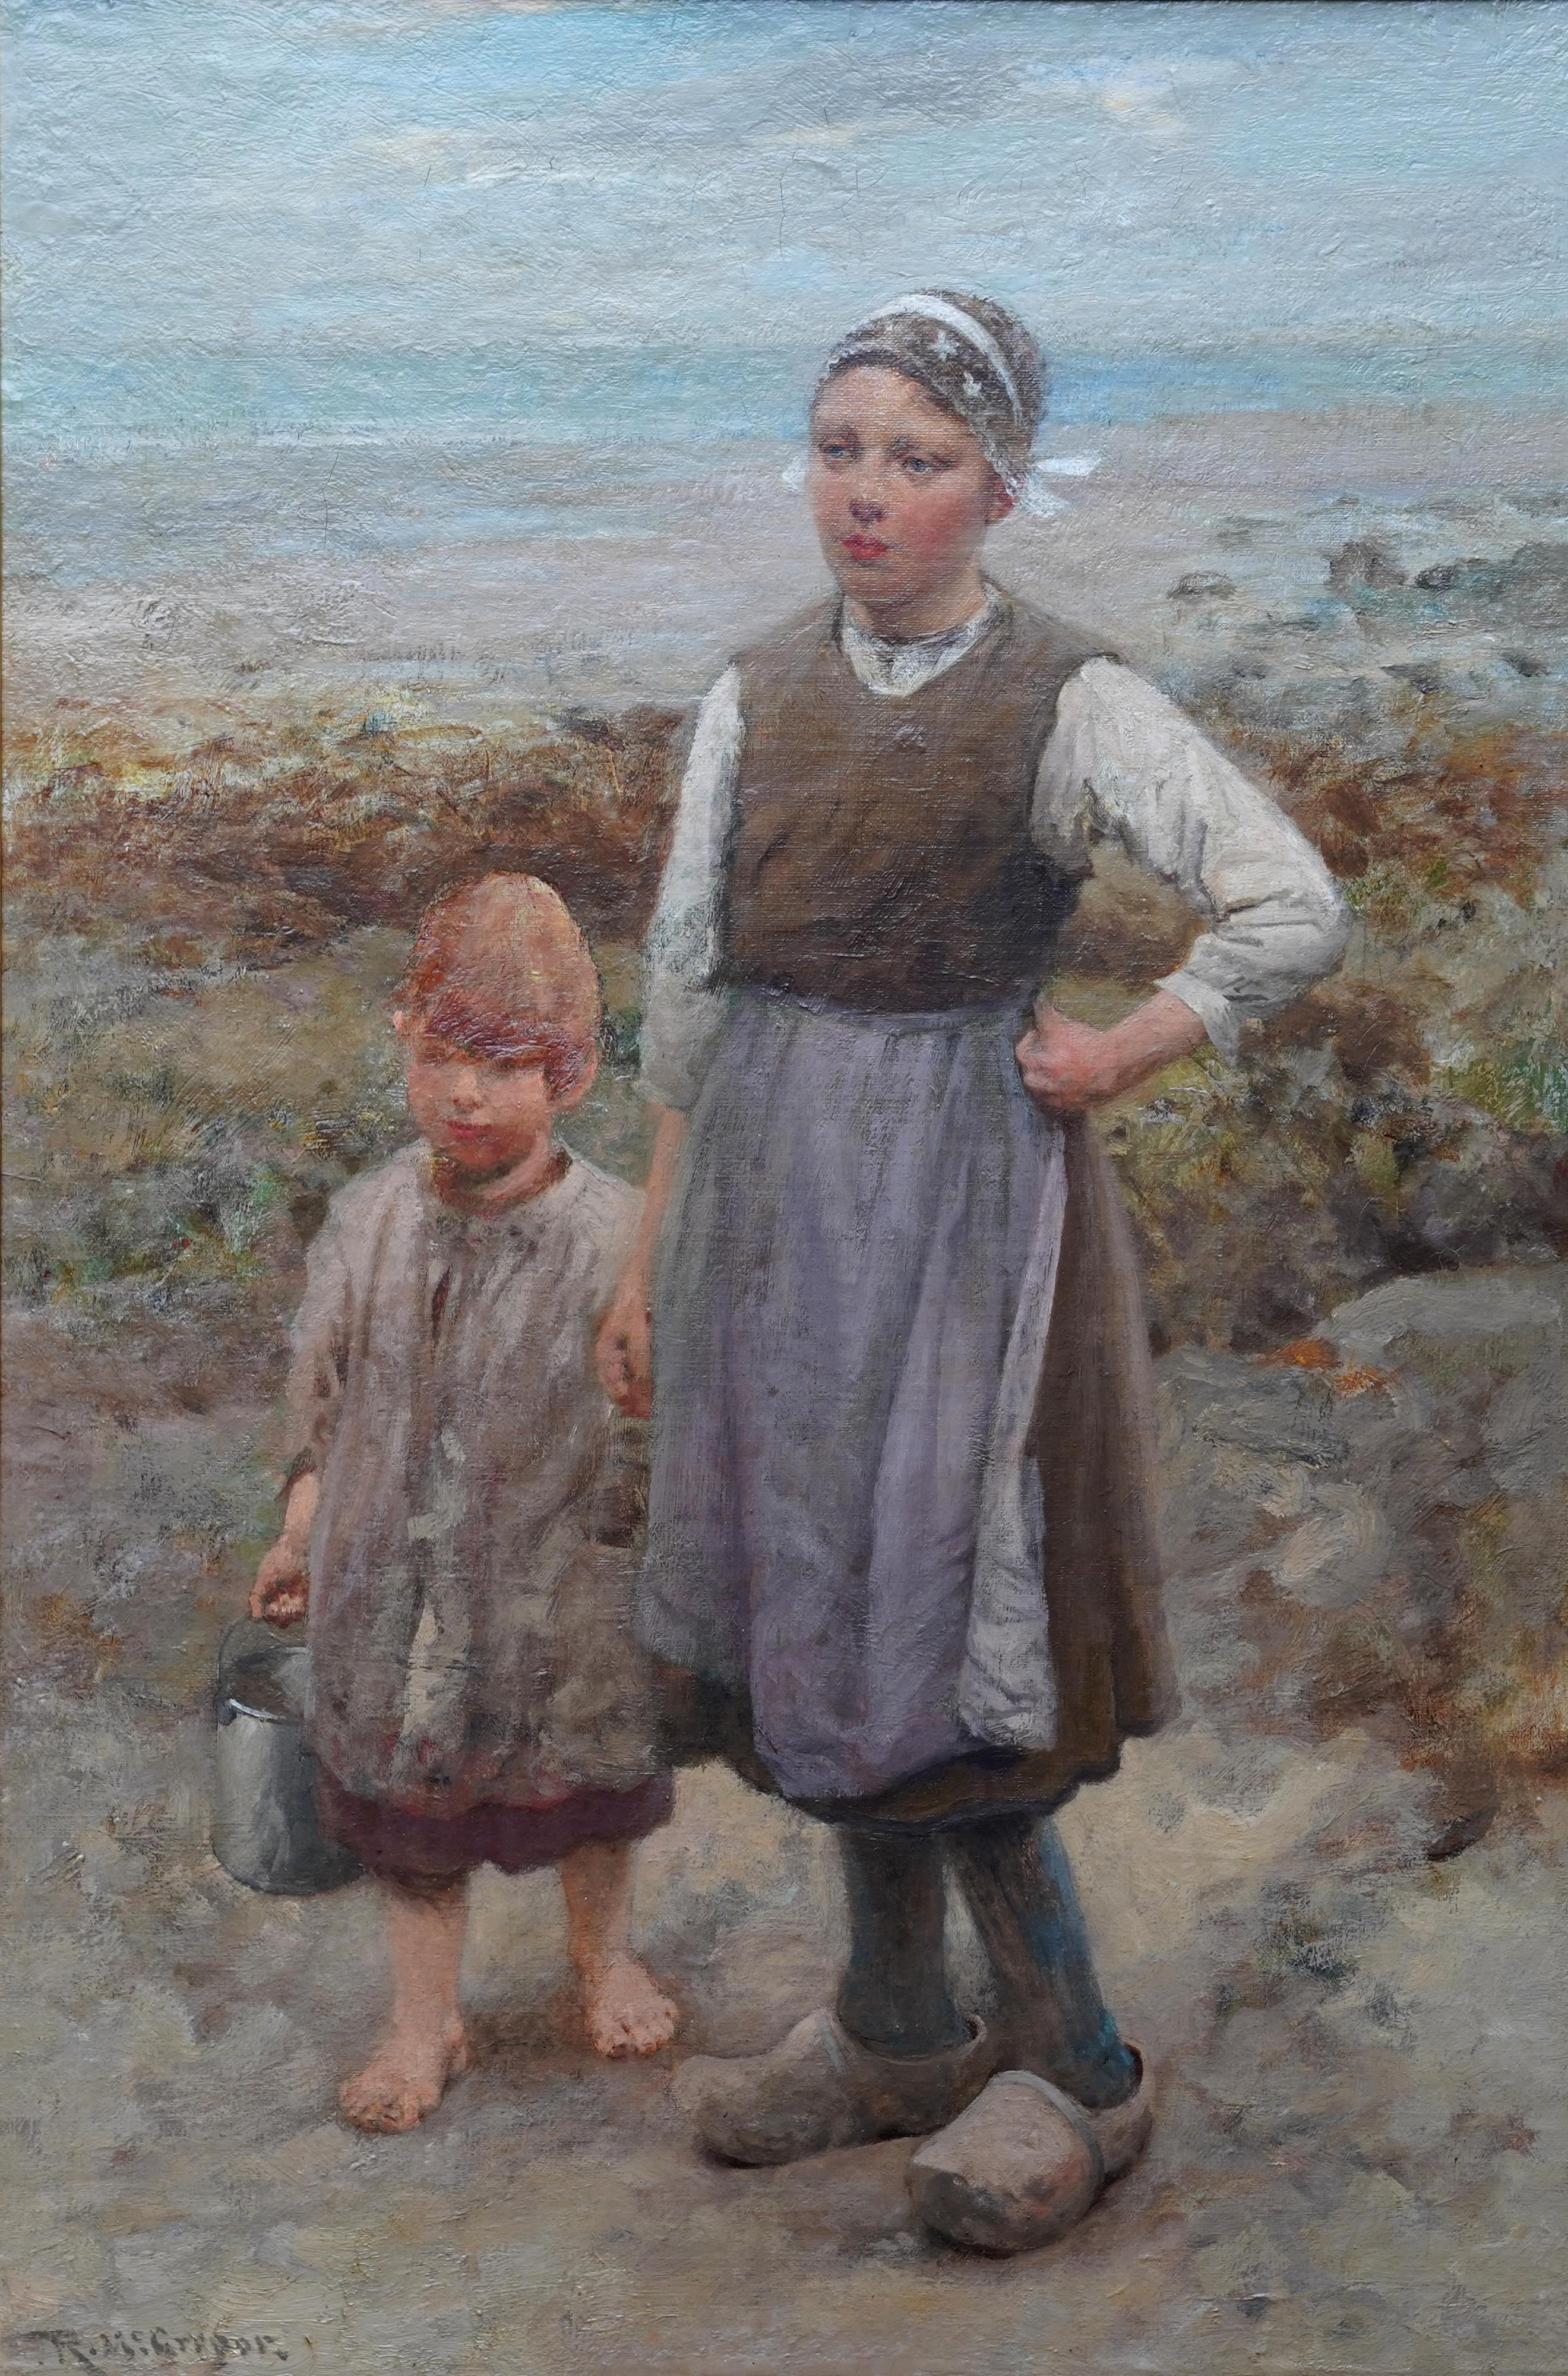 Brother and Sister - schottische Ausstellungskunst 1918 Porträt-Landschafts-Ölgemälde – Painting von Robert McGregor R.S.A